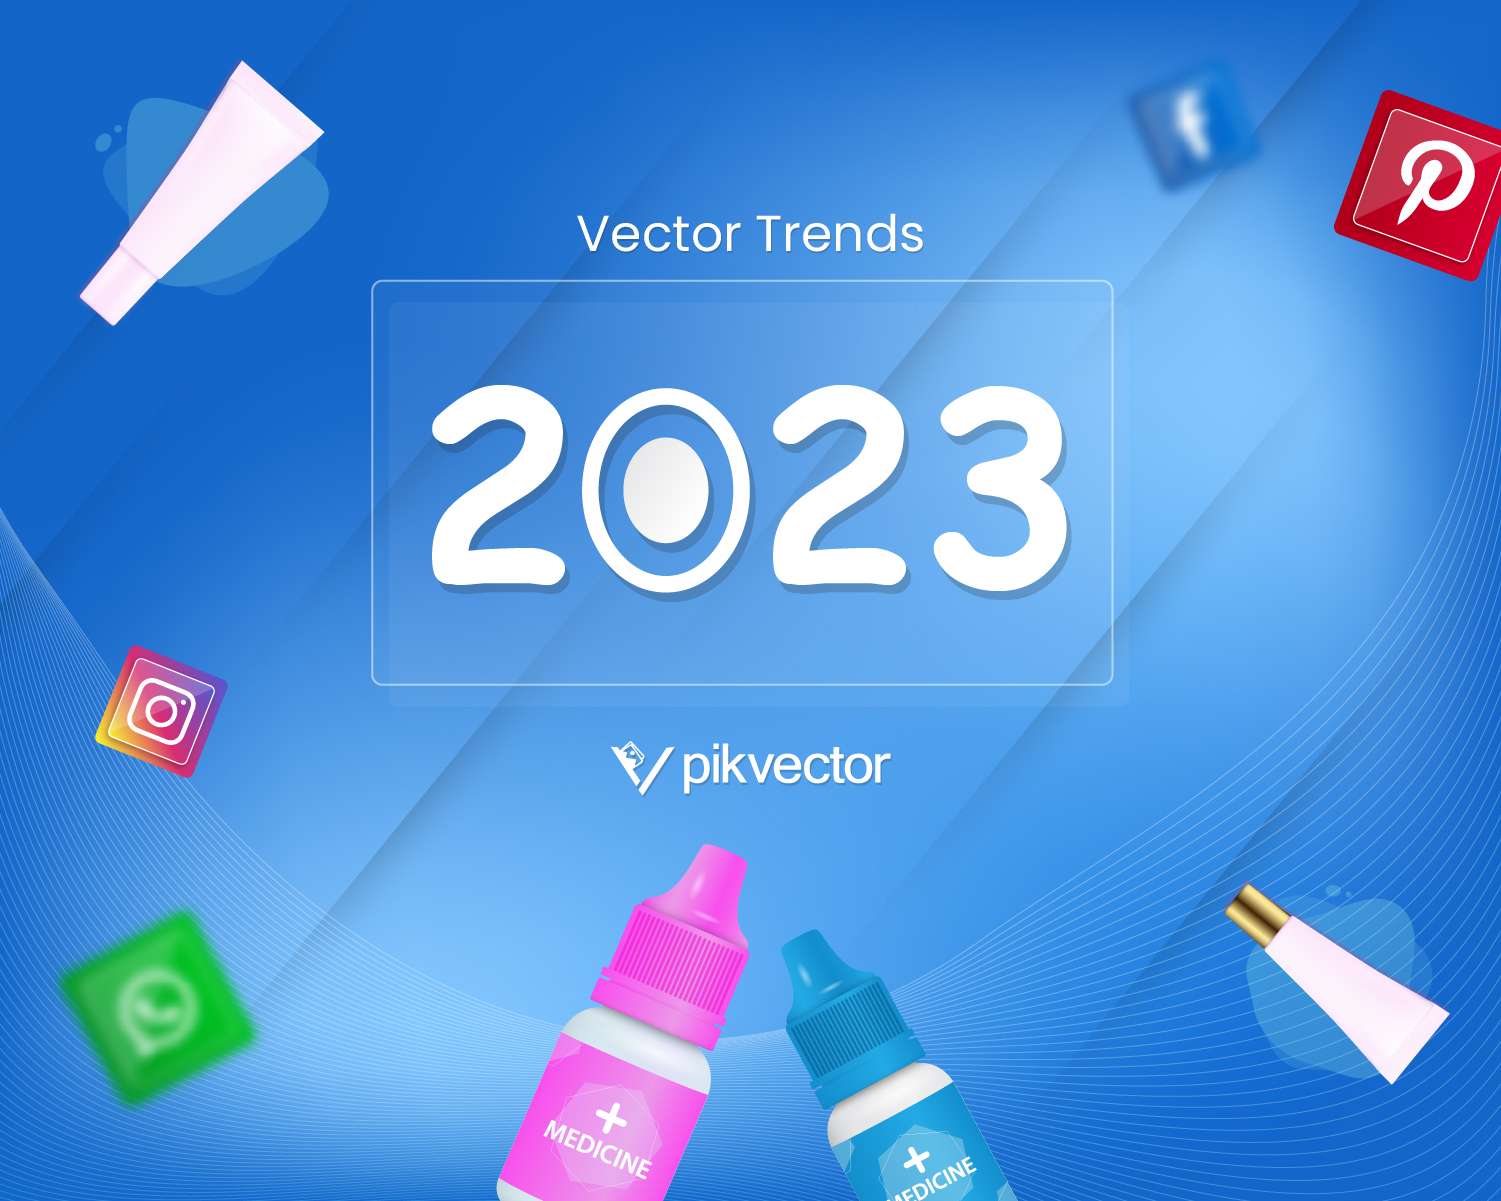 Vector trends 2023